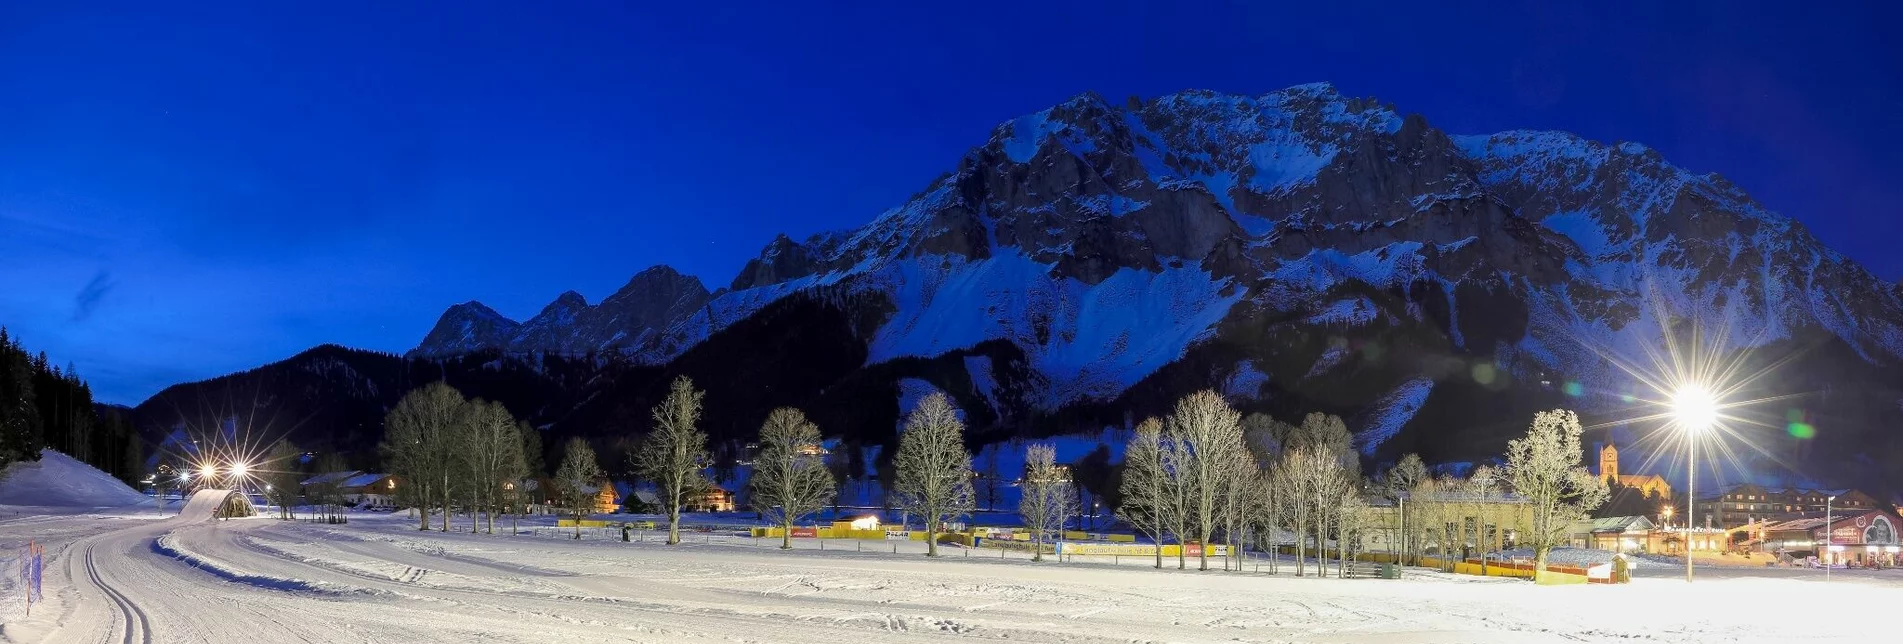 Langlauf Nachtloipe - Touren-Impression #1 | © Erlebnisregion Schladming-Dachstein